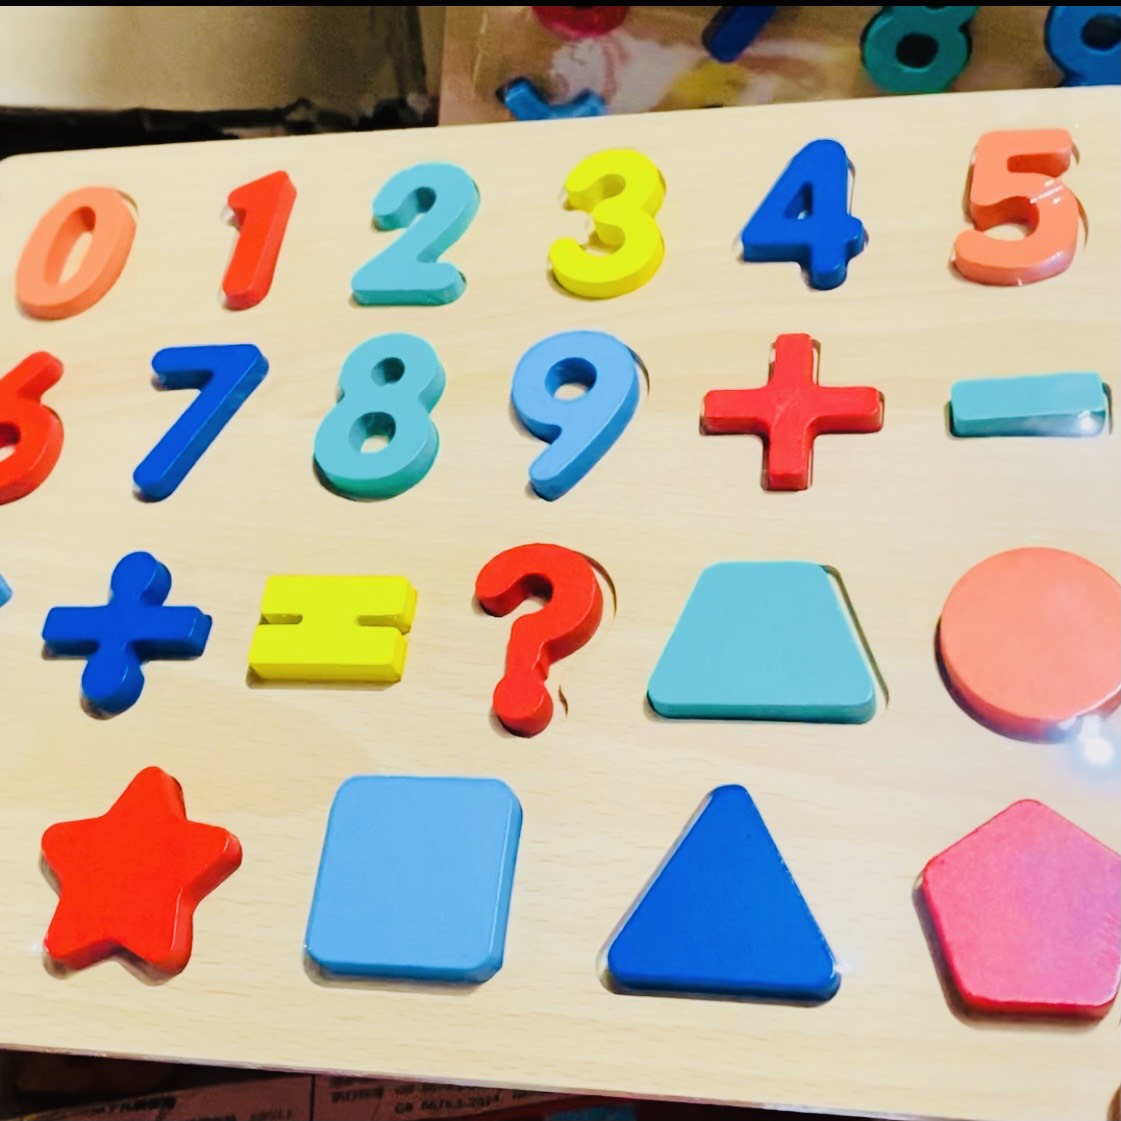 Bảng ghép số nổi hình học thông minh, đồ chơi lắp ghép số đếm học tính trí tuệ cho bé